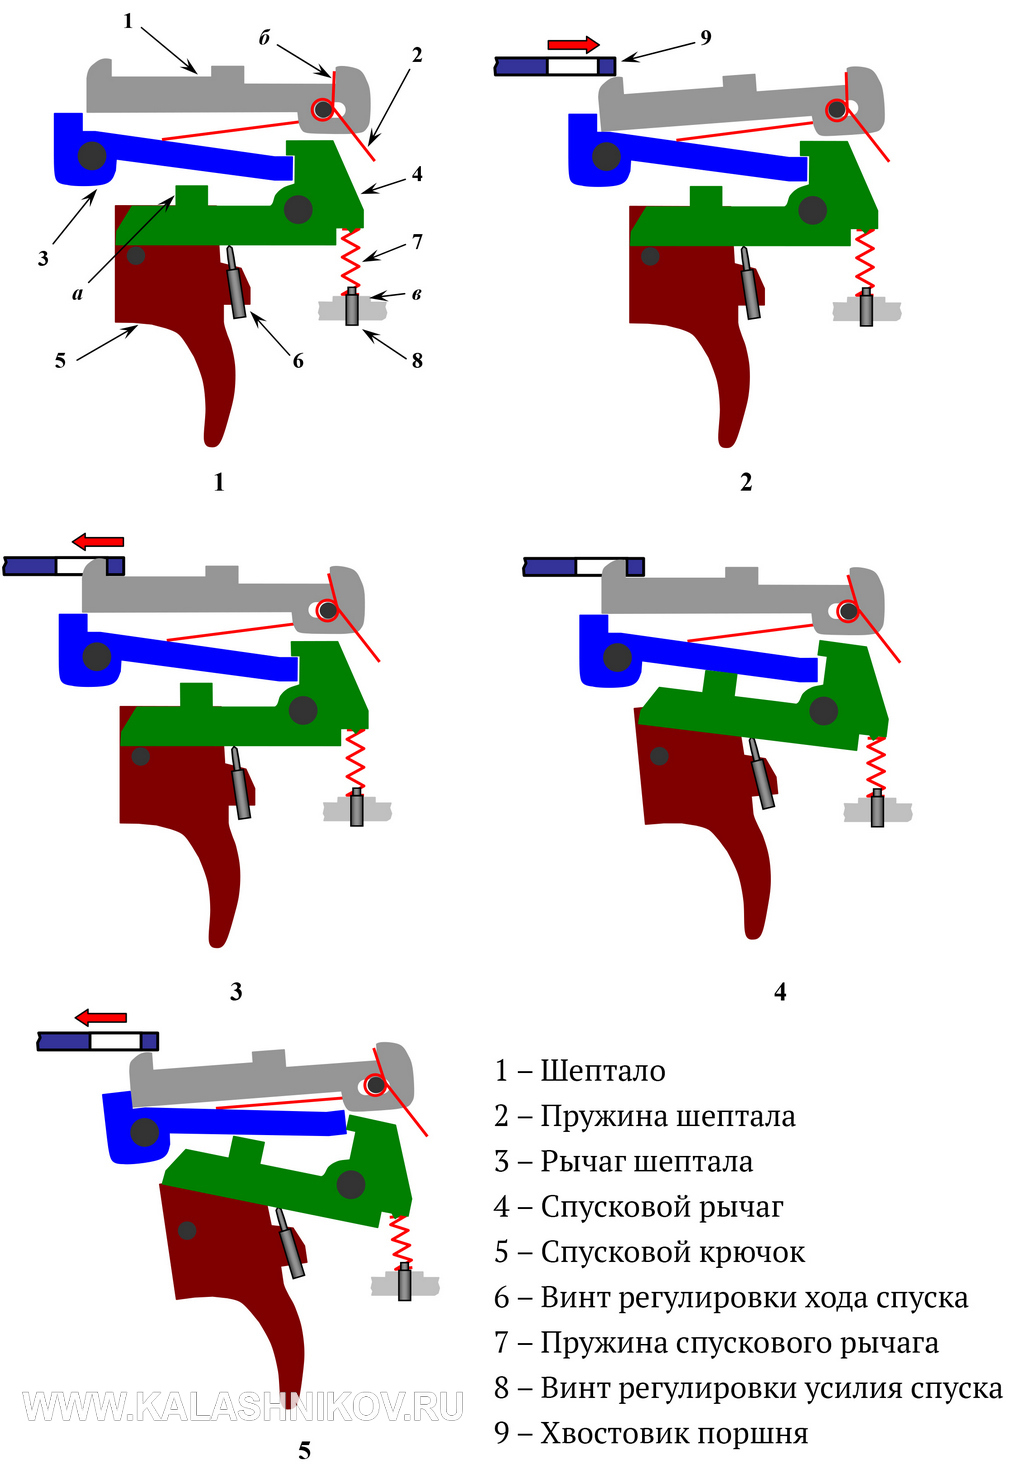 Схема работы спускового механизма пневматической винтовки NA 17 «Маэстро». Фото из журнала «Калашников»